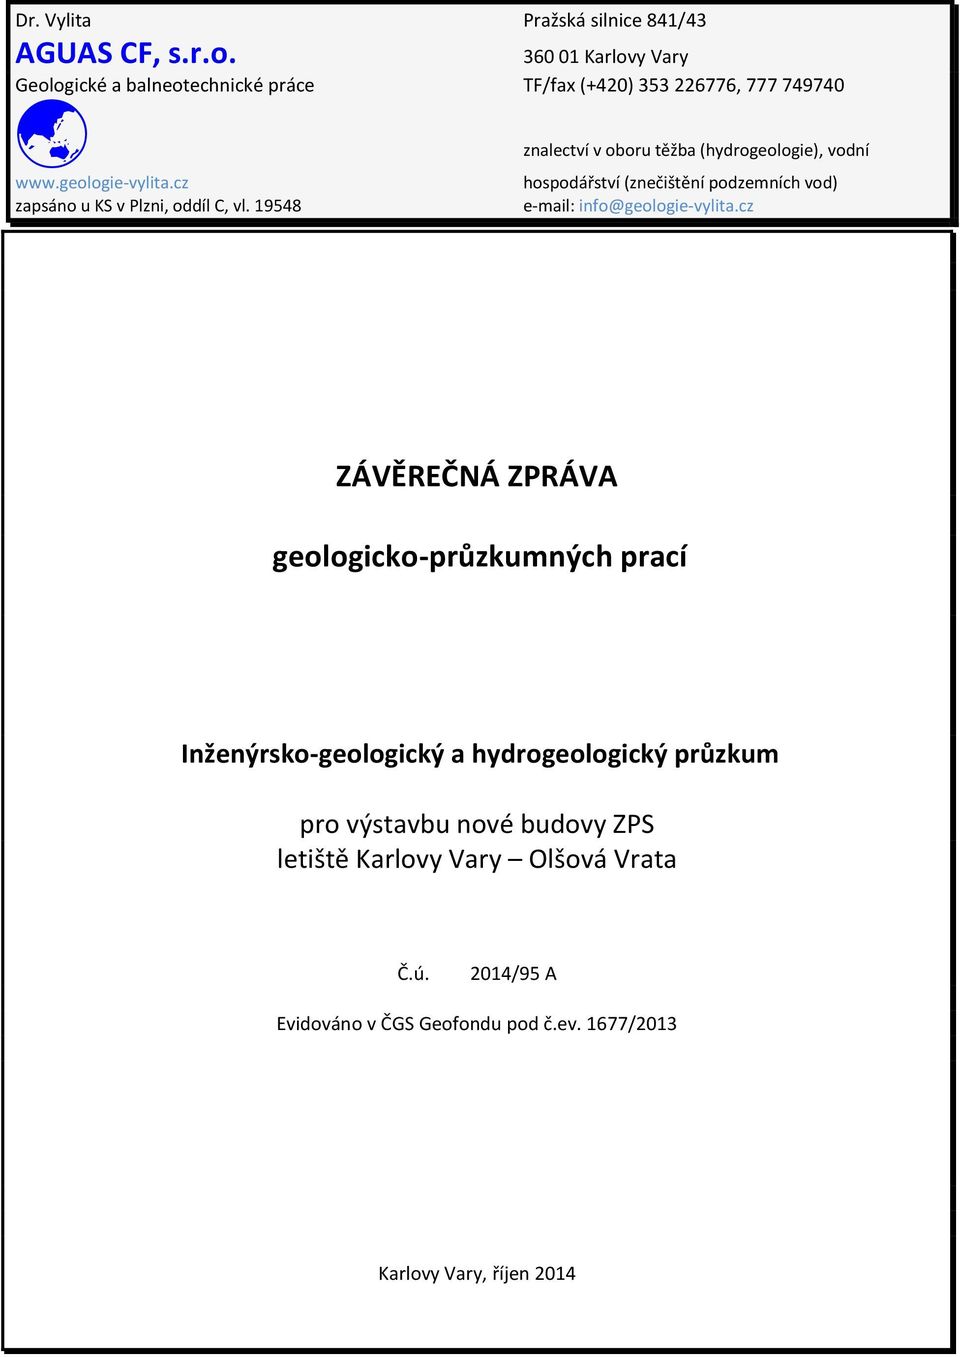 www.geologie-vylita.cz hospodářství (znečištění podzemních vod) zapsáno u KS v Plzni, oddíl C, vl. 19548 e-mail: info@geologie-vylita.